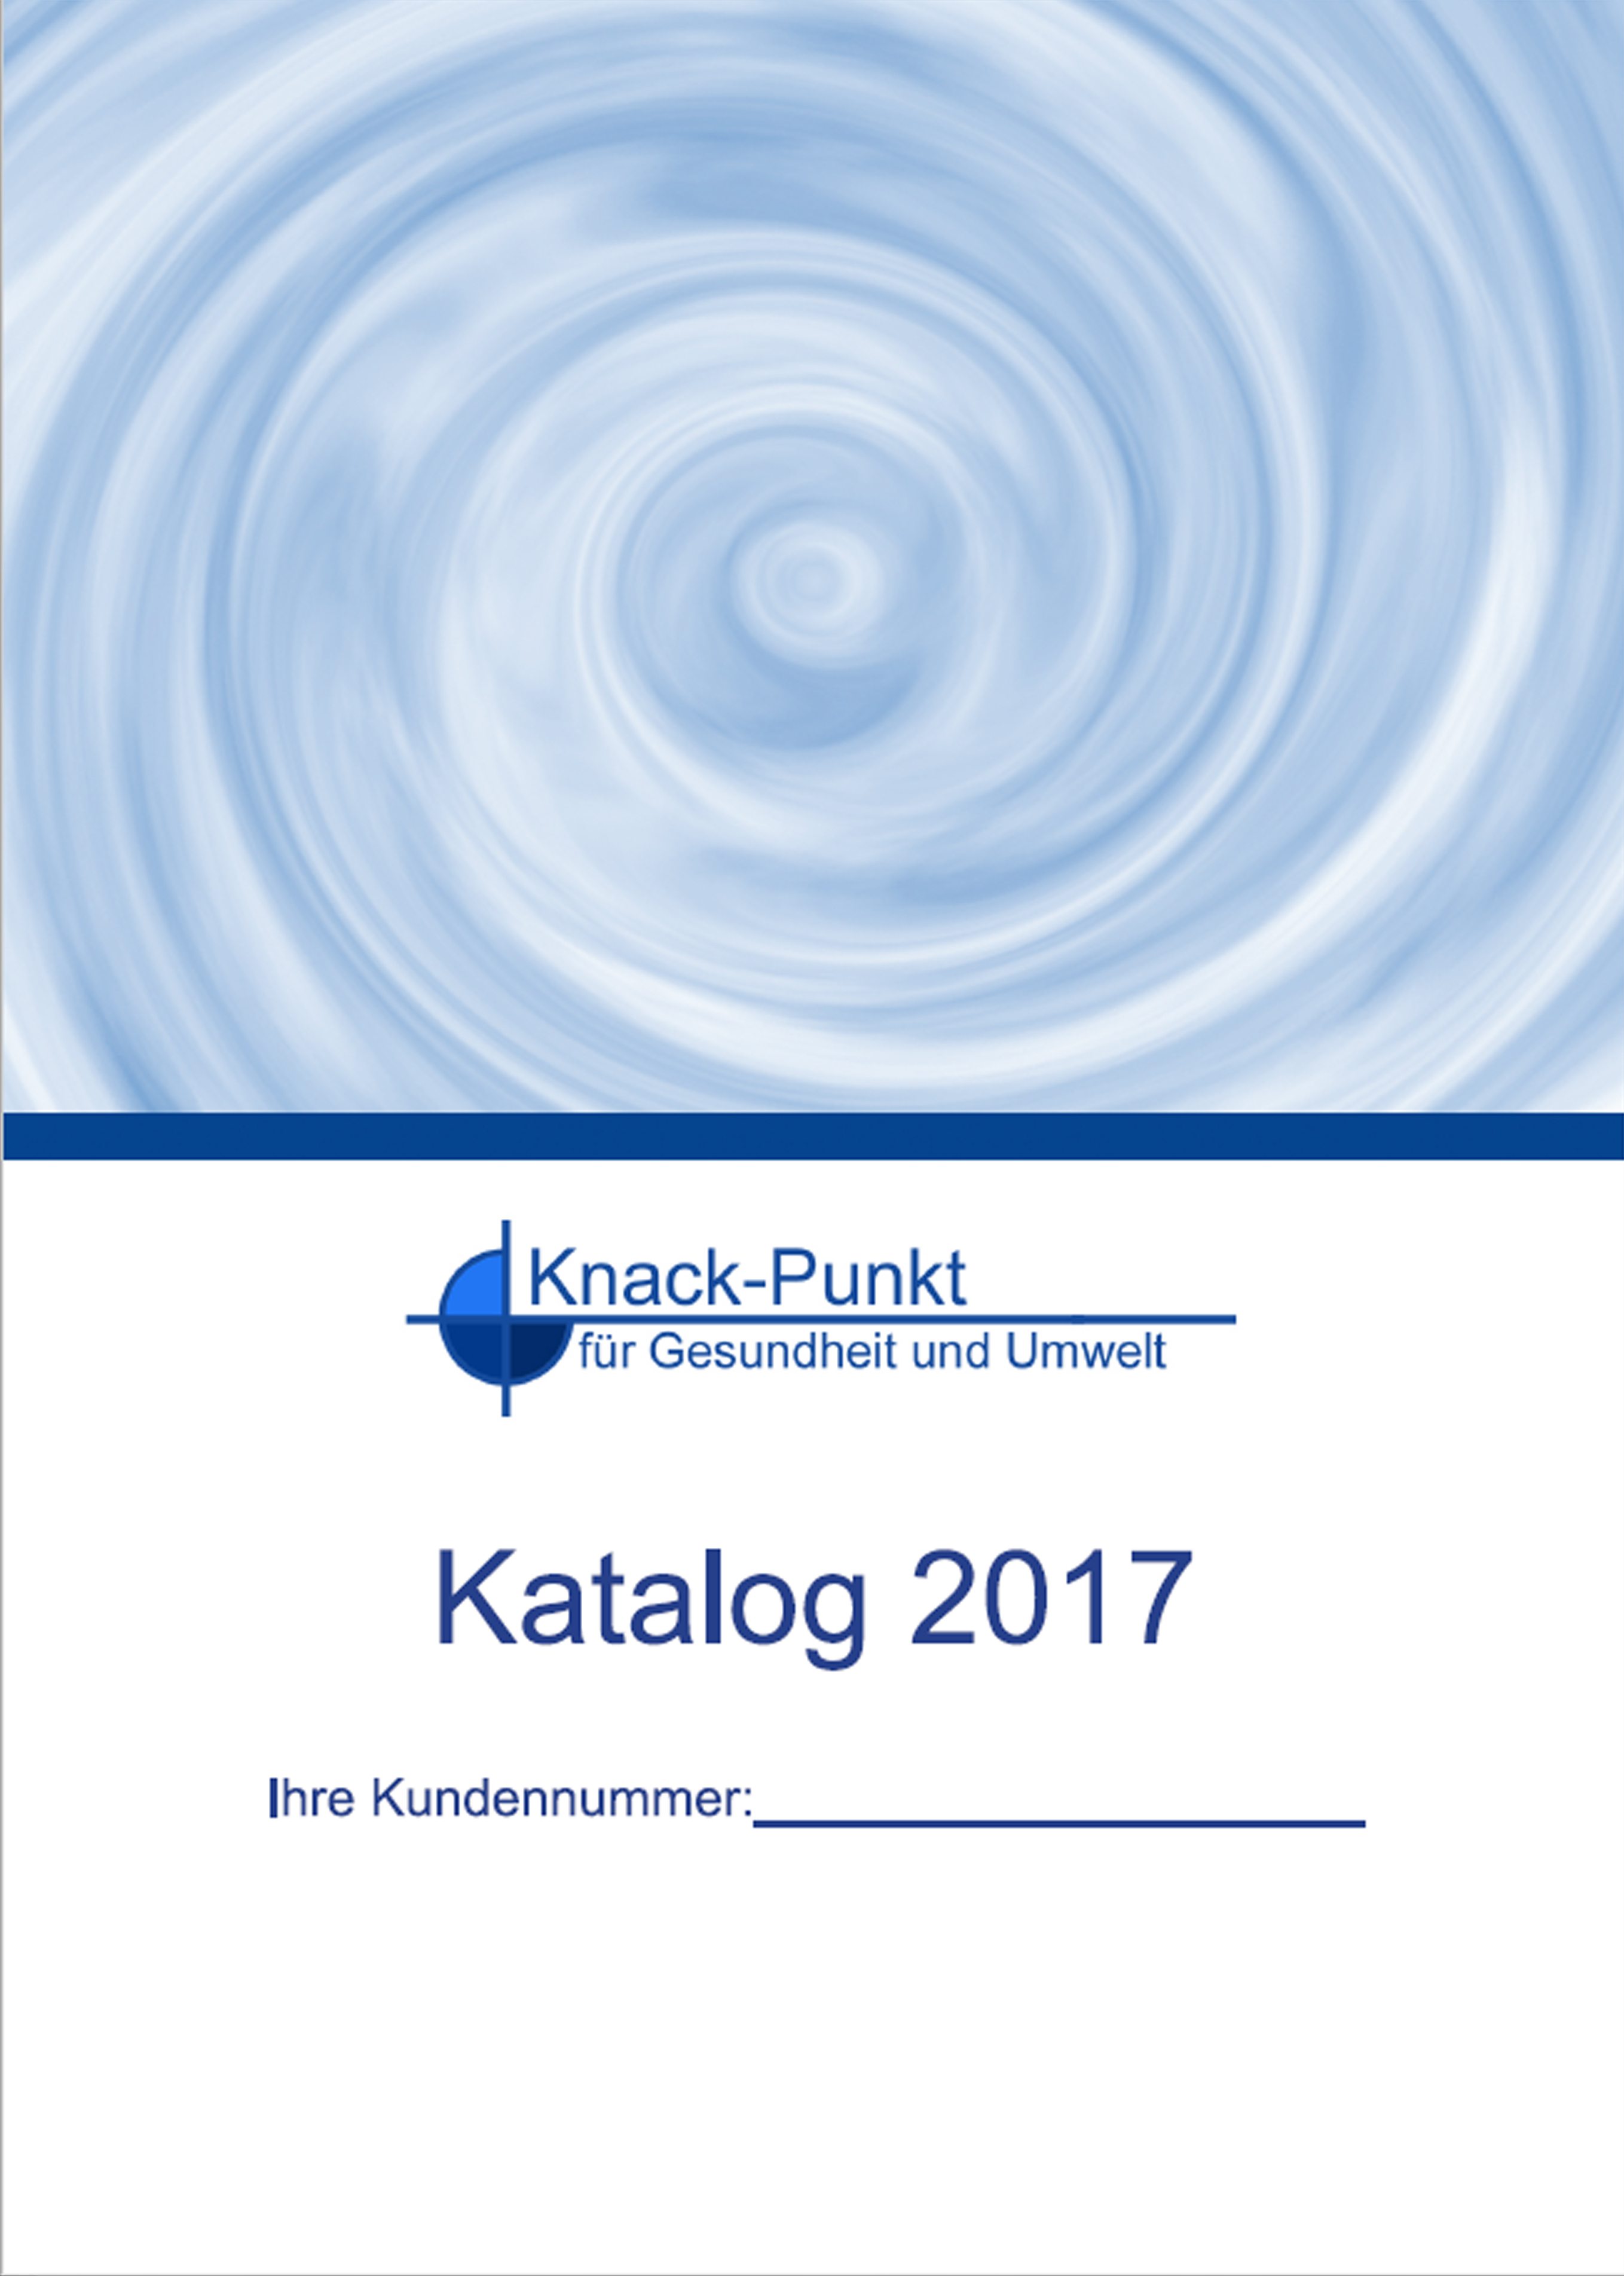 Katalog der Firma Knack-Punkt zum kostenlosen Download